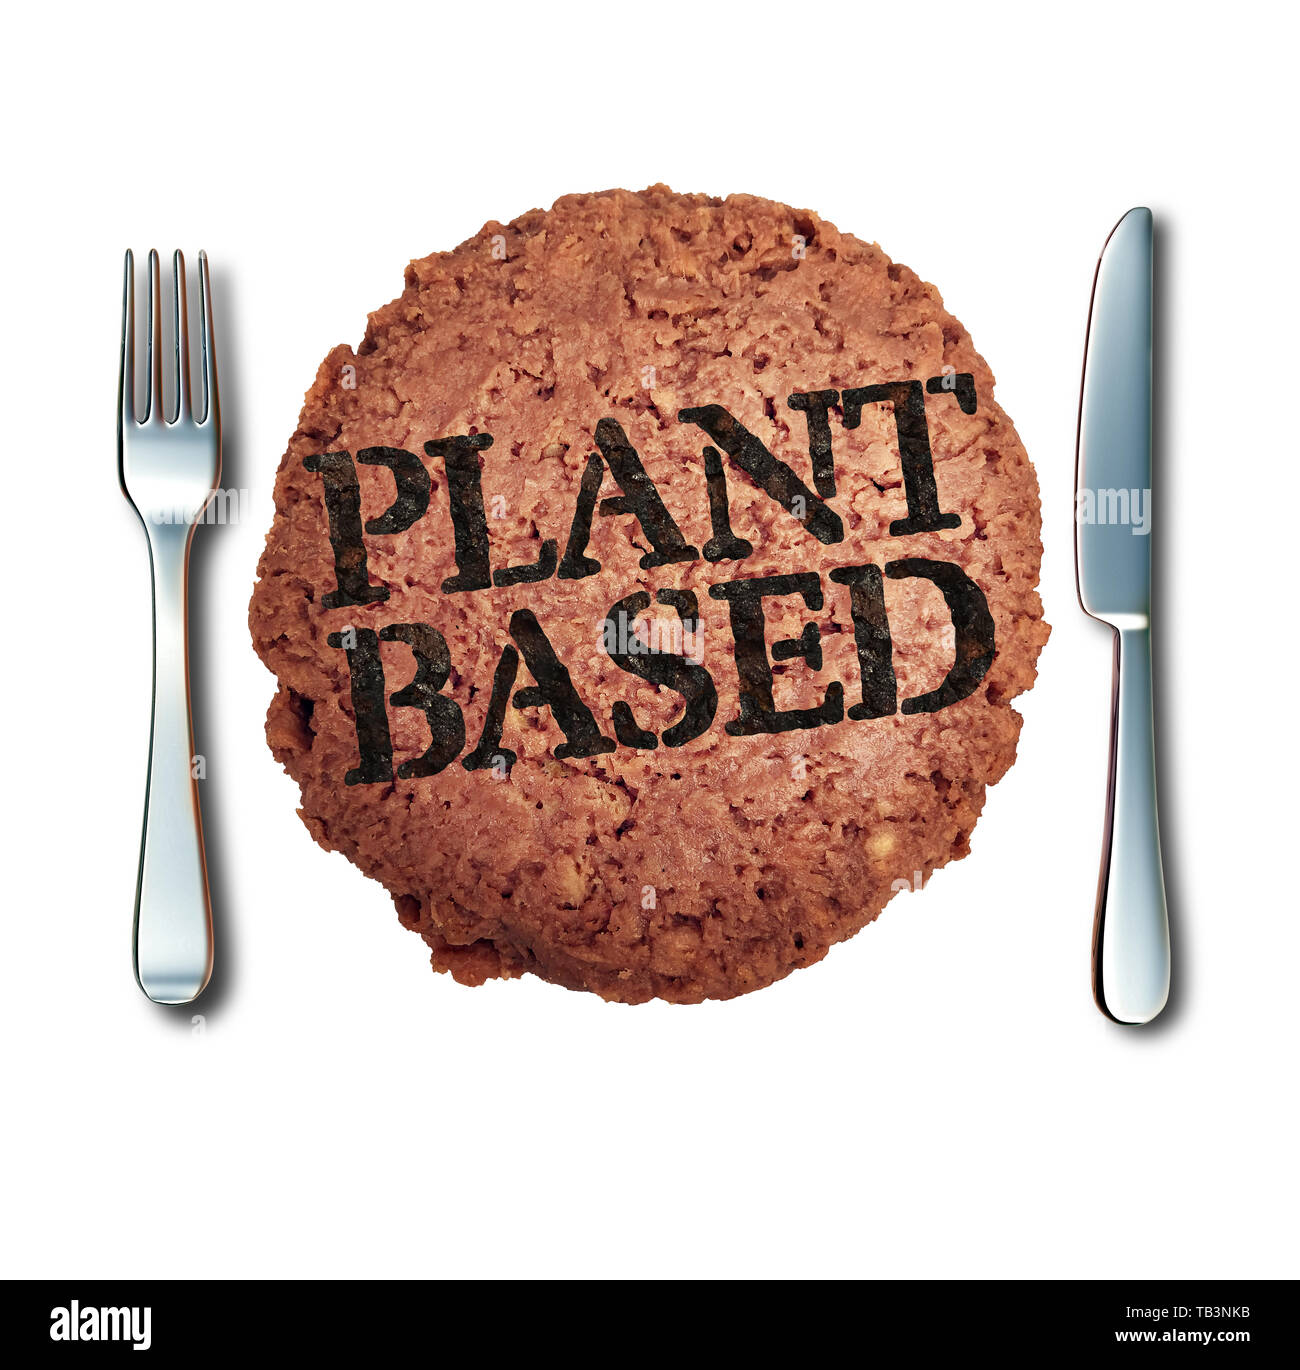 Impianto basato alternativa di carne come un vegan burger e finta di proteina animale che rappresenta un hamburger vegetariano di marca con testo di cotto. Foto Stock